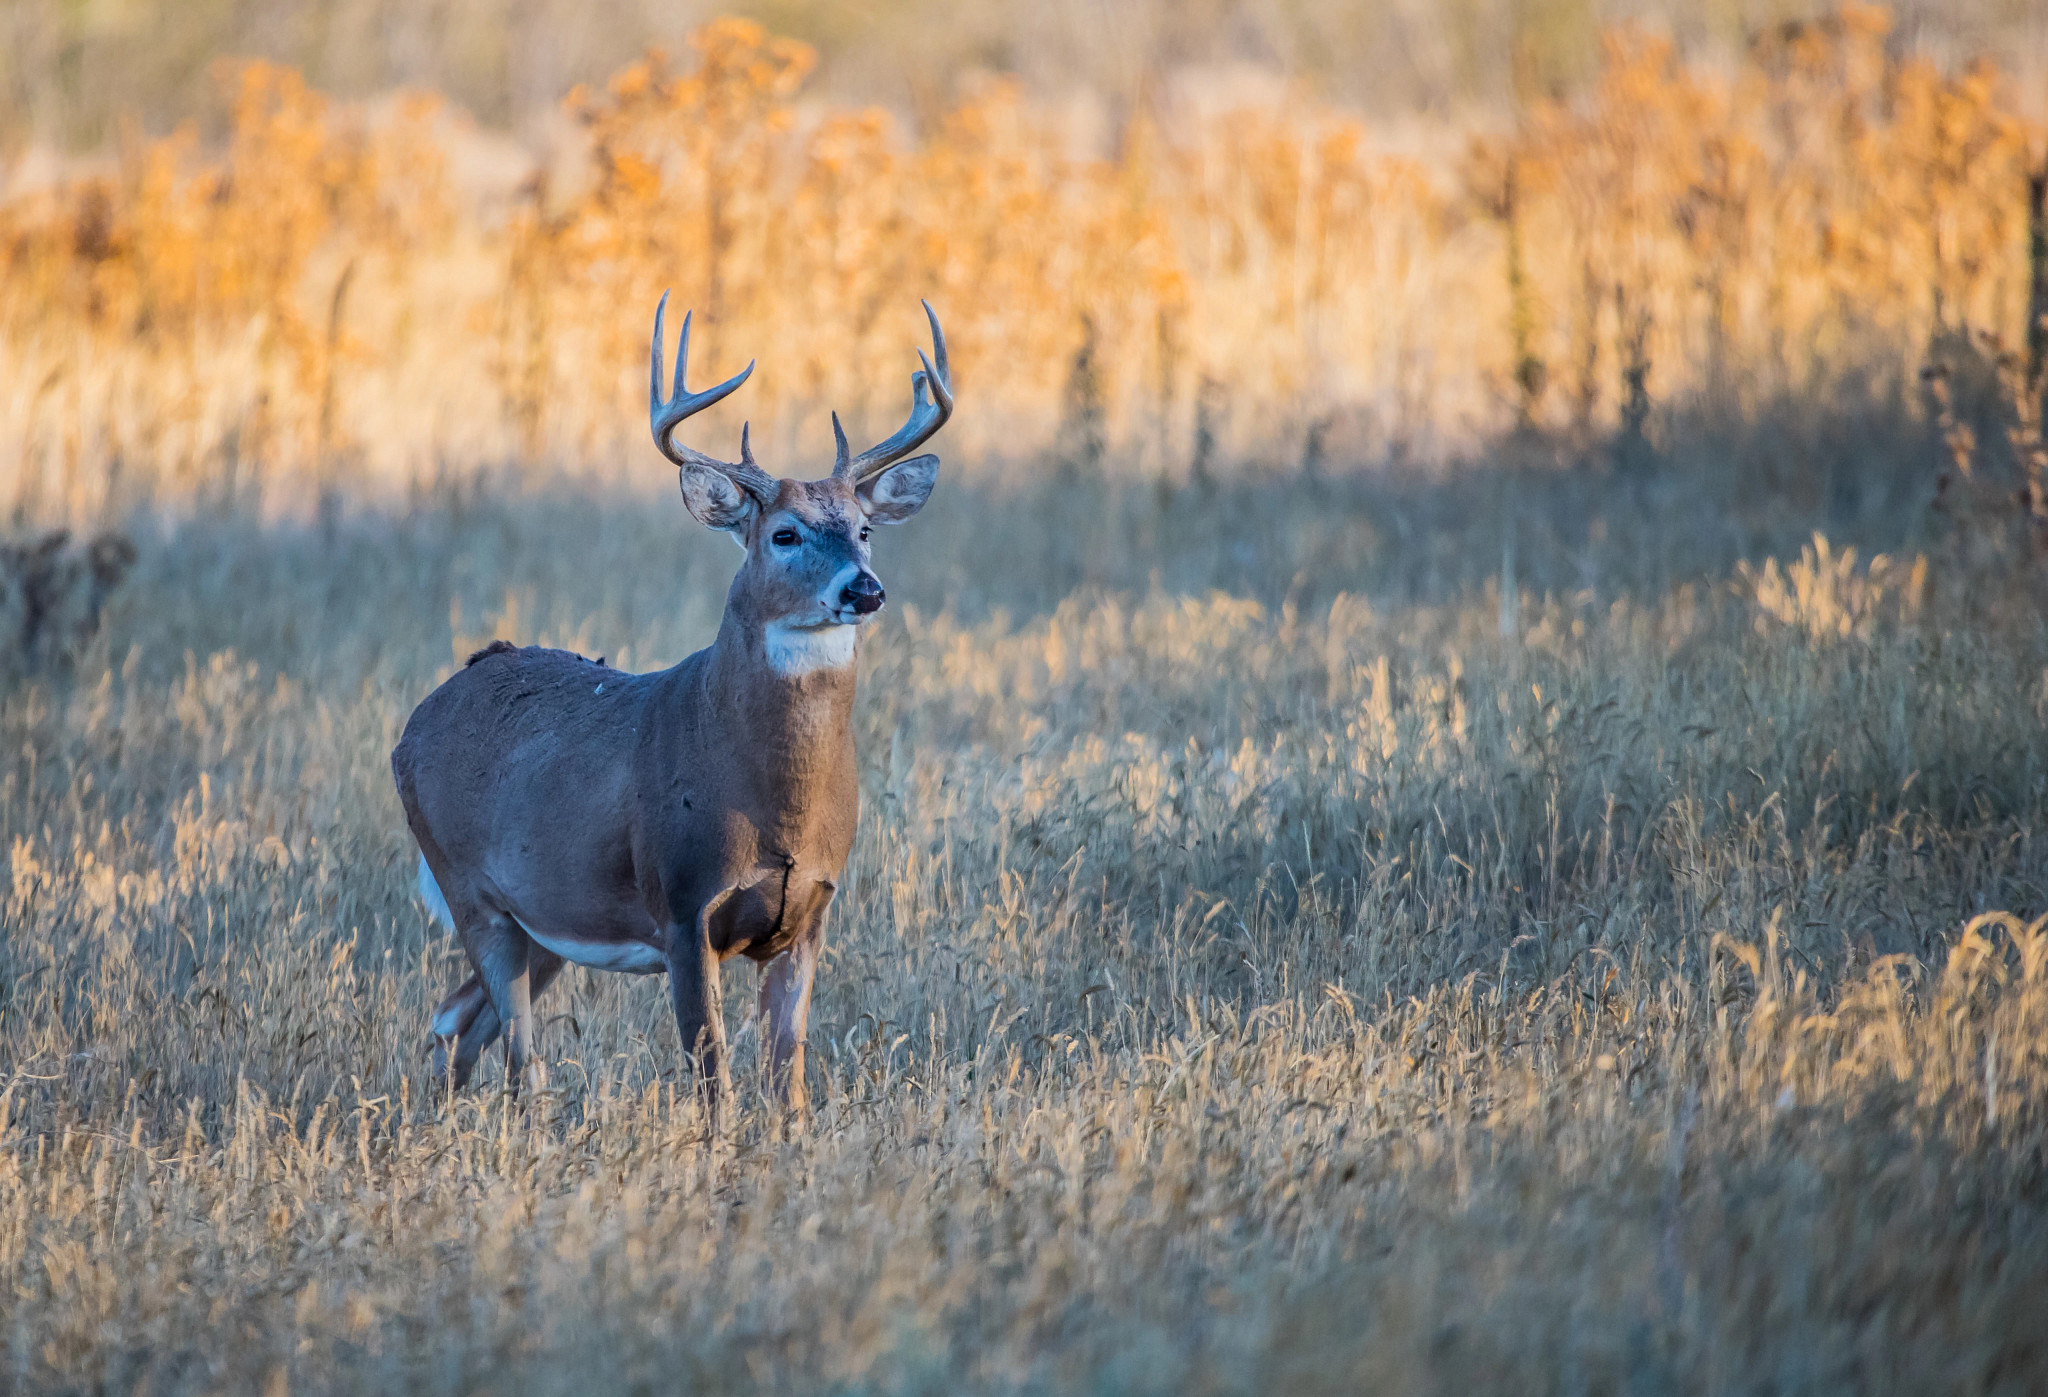 majestic buck standing in empty crop field